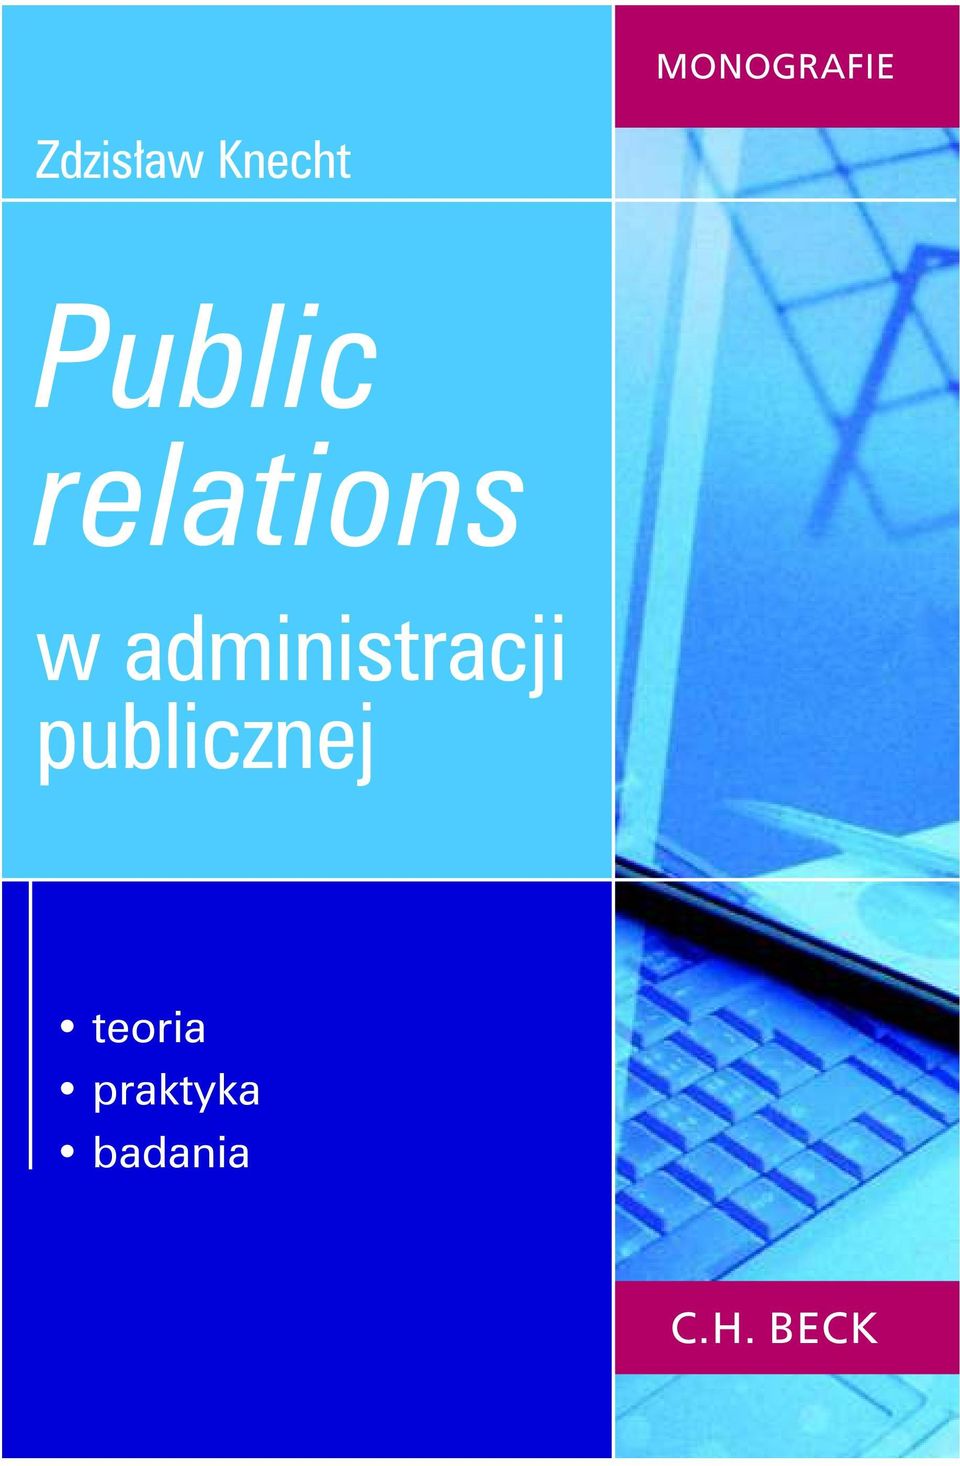 administracji publicznej